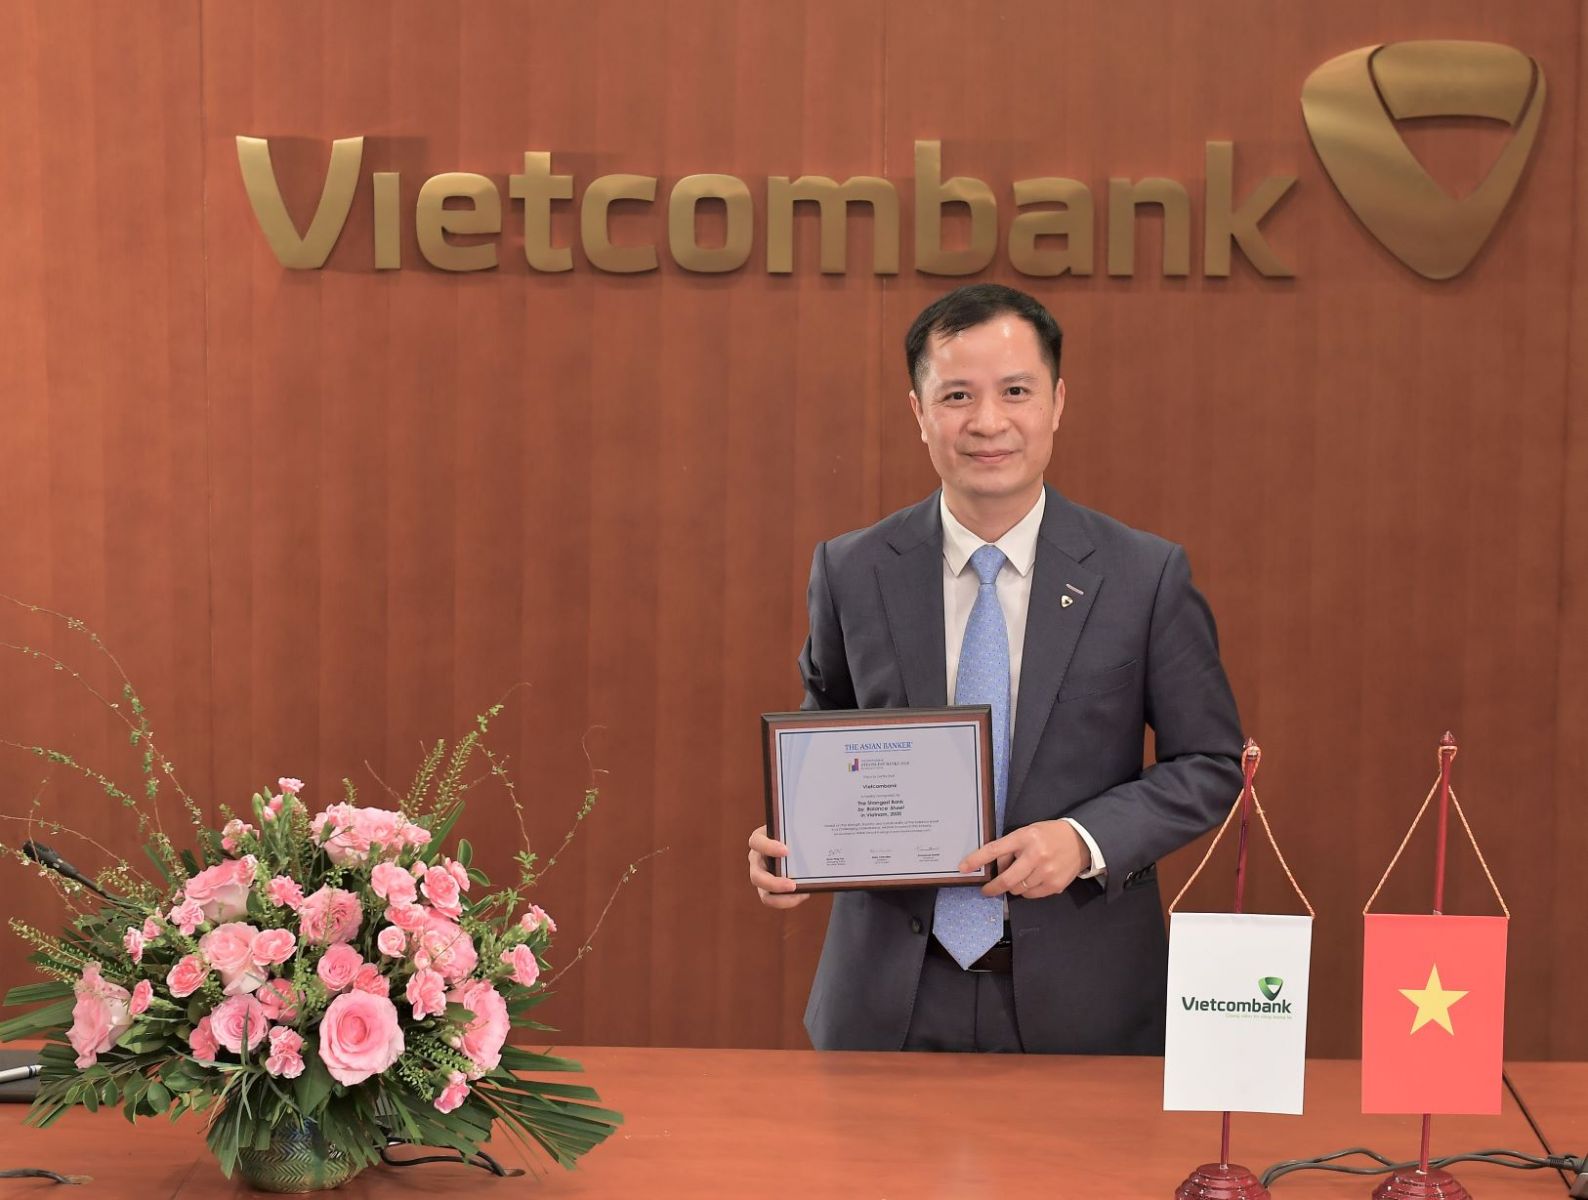 Đại diện Vietcombank – ông Lê Hoàng Tùng – Kế toán trưởng nhận danh hiệu